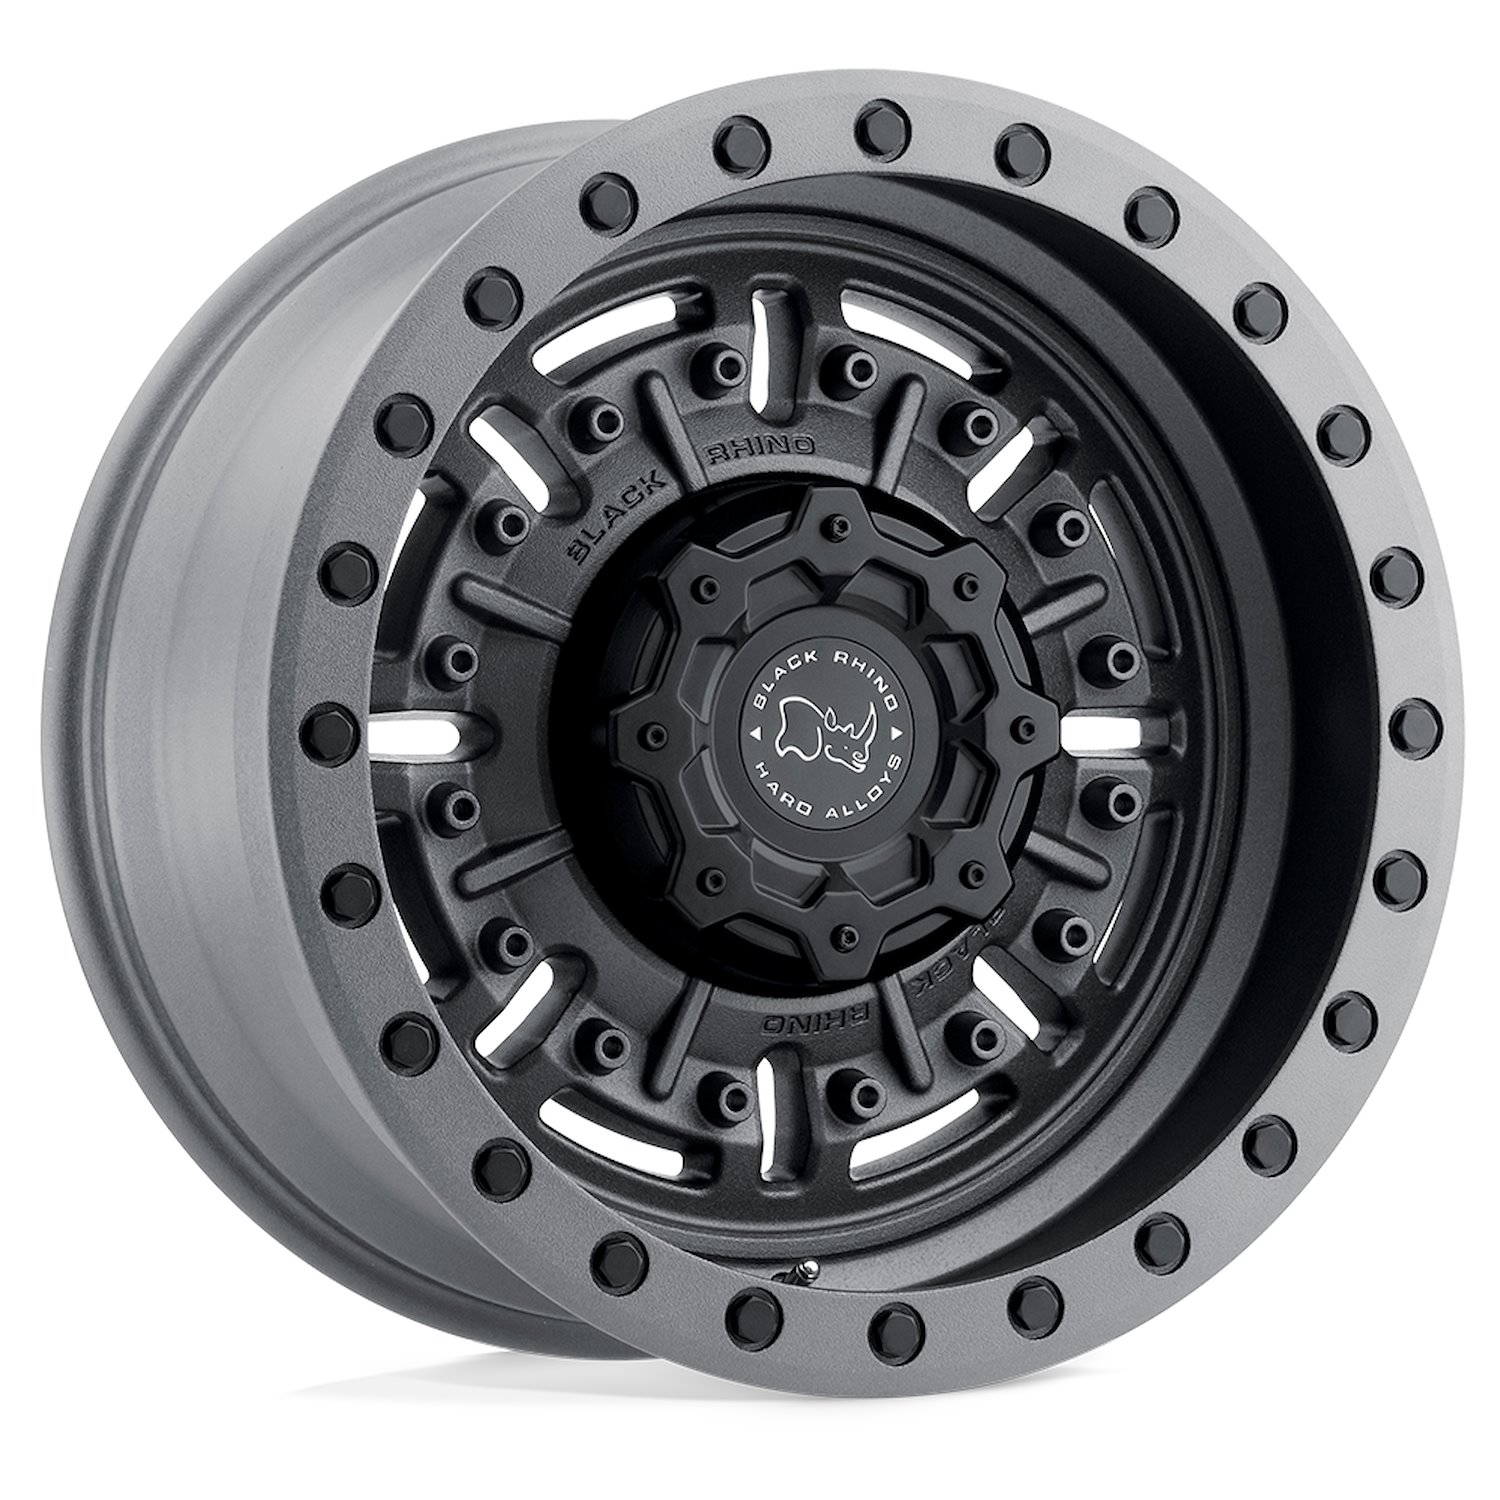 1785ABR006140G12 ABRAMS Wheel [Size: 17" x 8.50"] Textured Matte Gunmetal